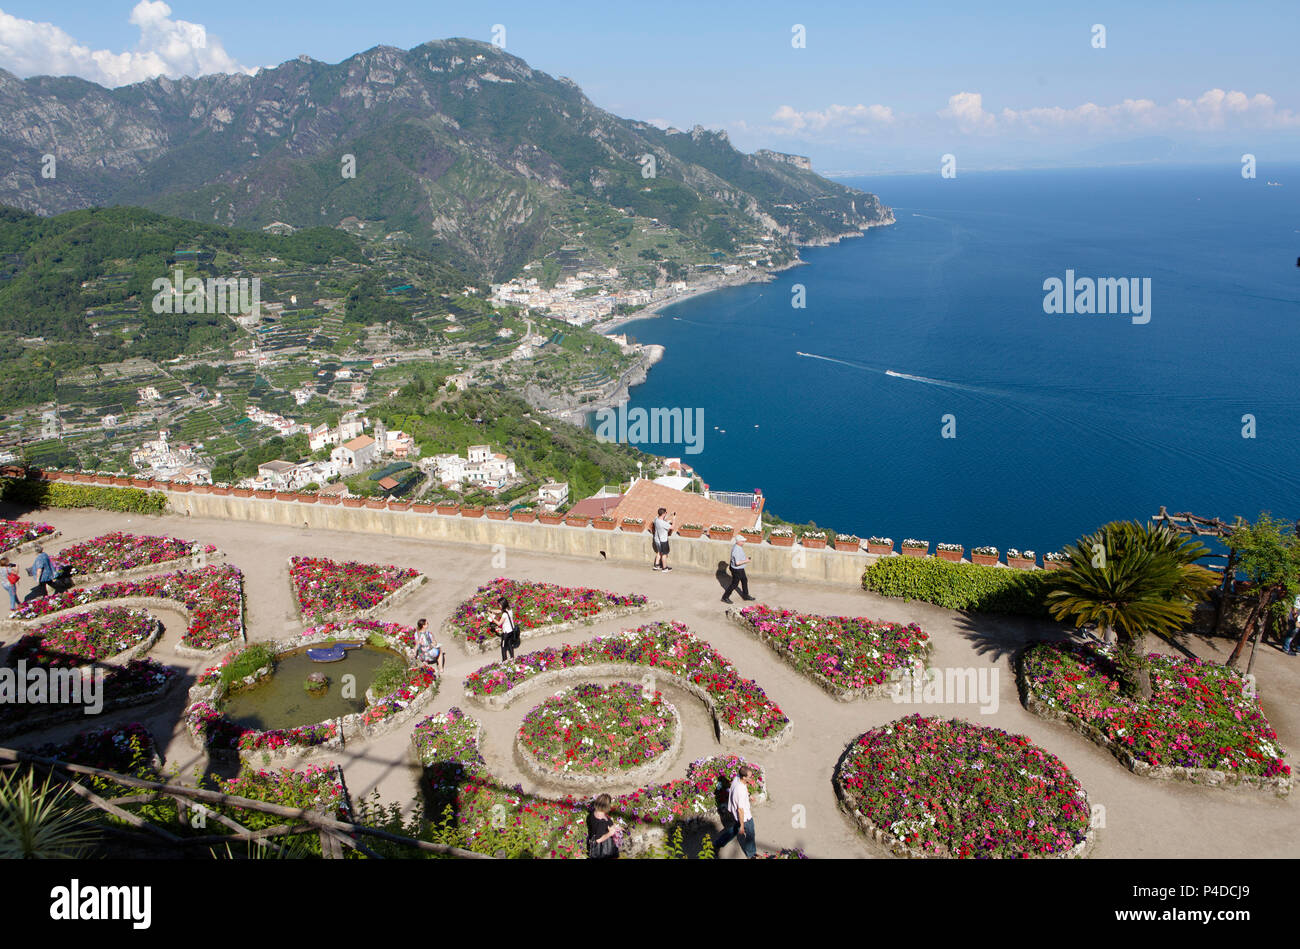 Il giardino dell'anima, Villa Rufolo a Ravello, costiera amalfitana, Italia Foto Stock